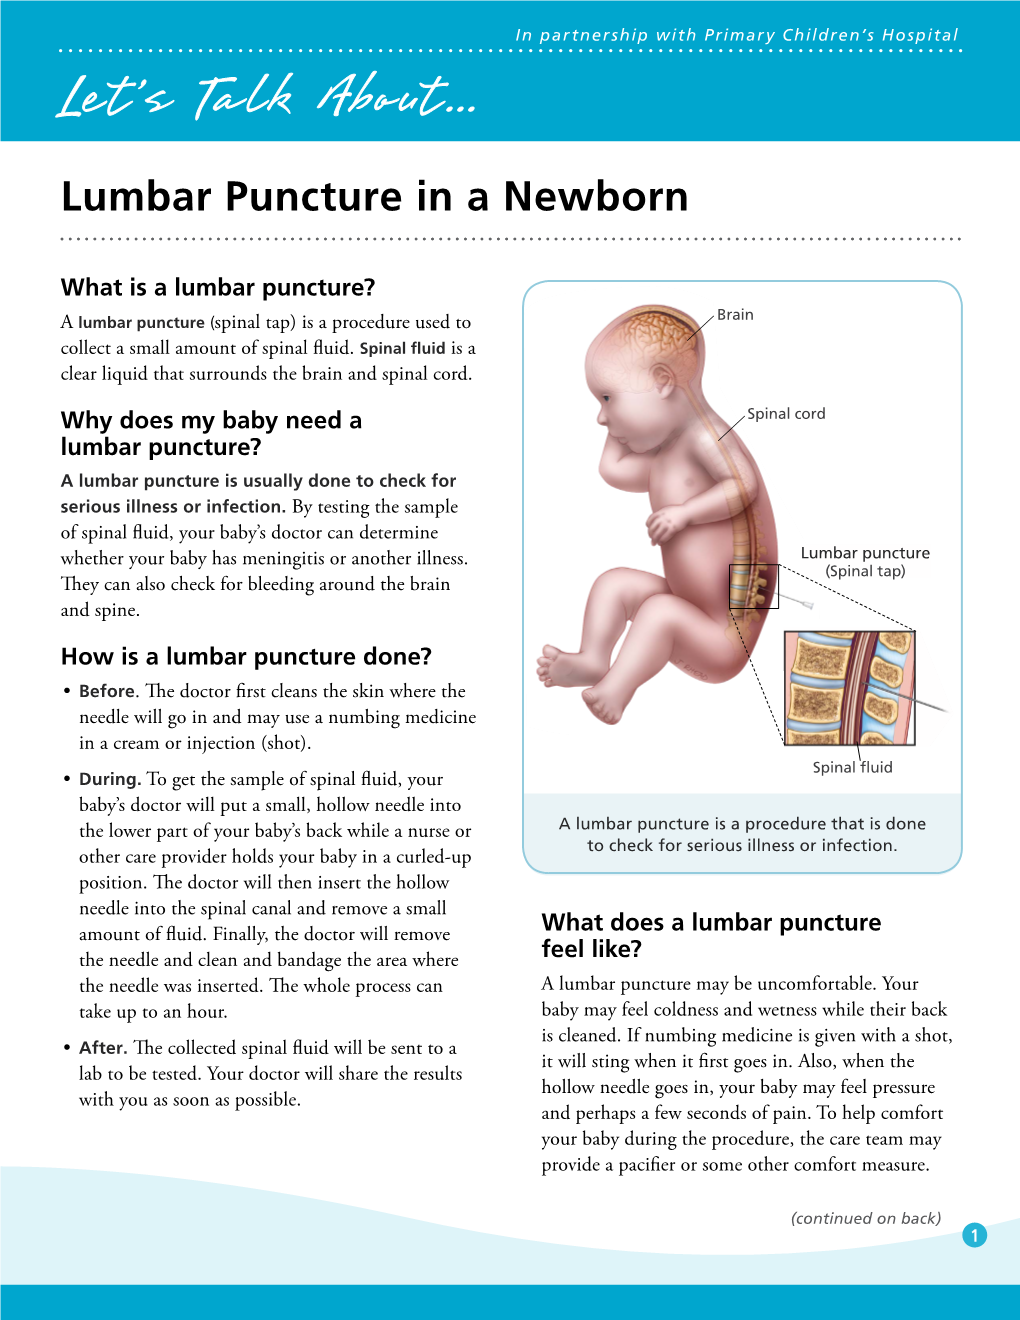 Lumbar Puncture in a Newborn